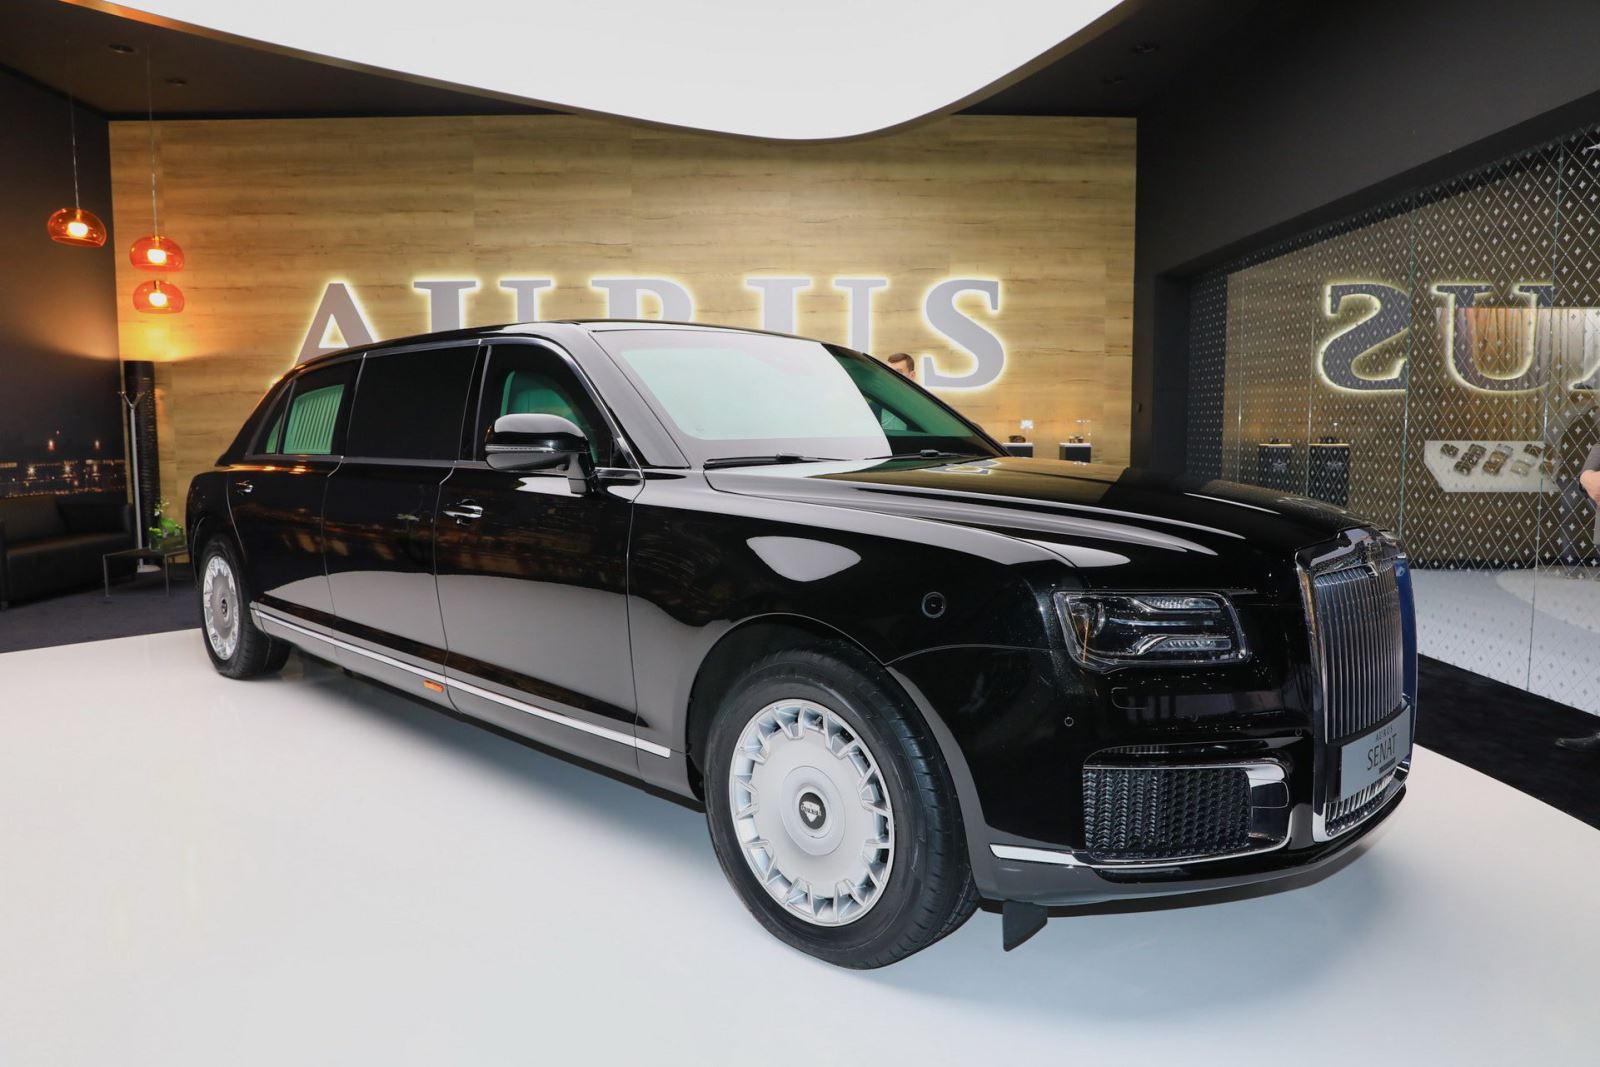 2 mẫu sedan và limousine của Aurus - thương hiệu được mệnh danh là "Rolls-Royce của nước Nga" đã chính thức trình diện khách hàng châu Âu tại triển lãm Geneva và nhận được không ít lời tán dương. Rolls-Royce hay Bentley cũng phải dè chừng. 5